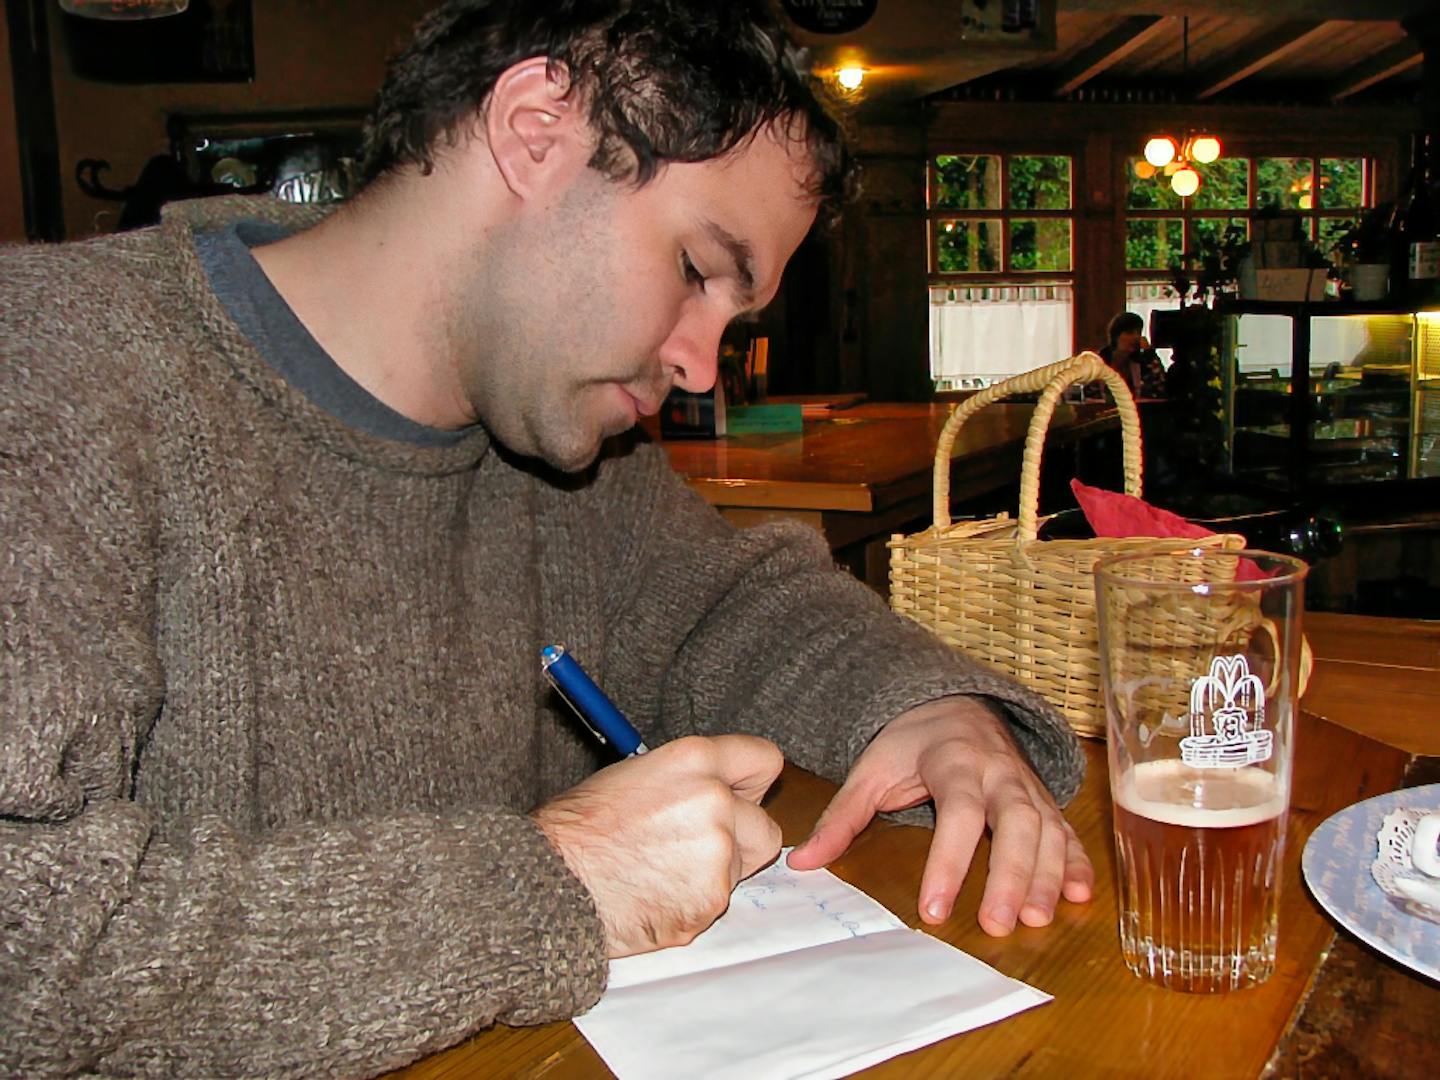 Shaun taking notes in Belgium